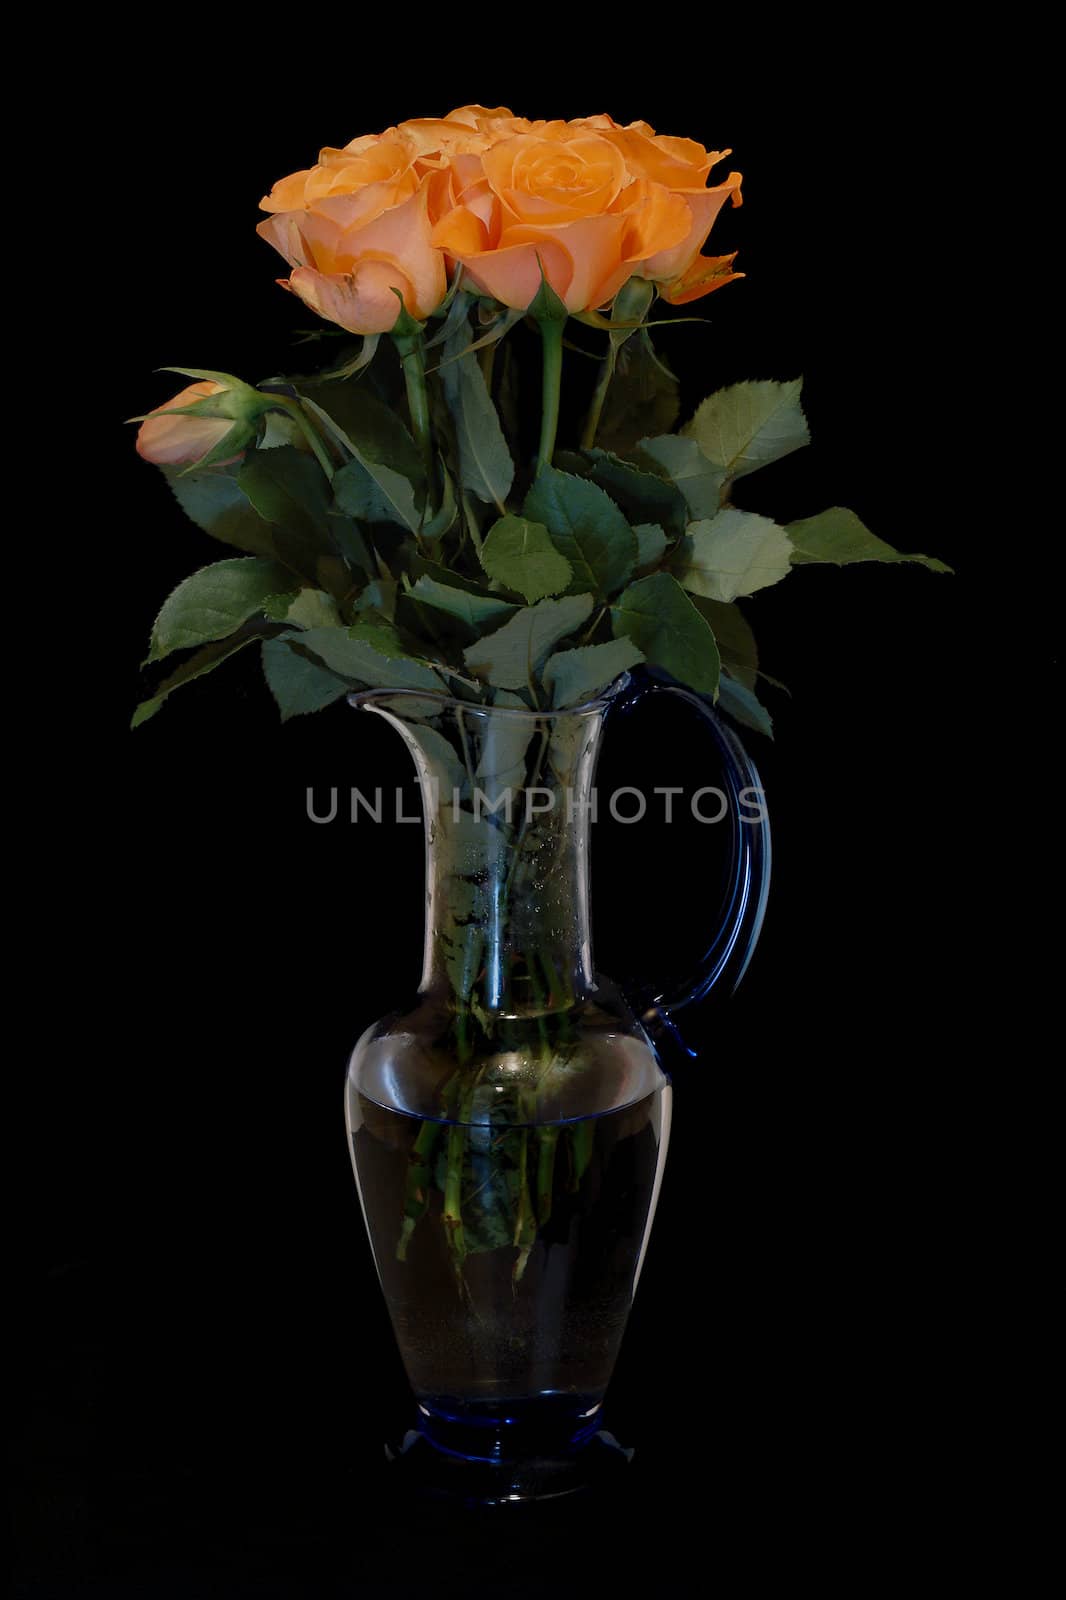 Orange roses in a vase by steelneck